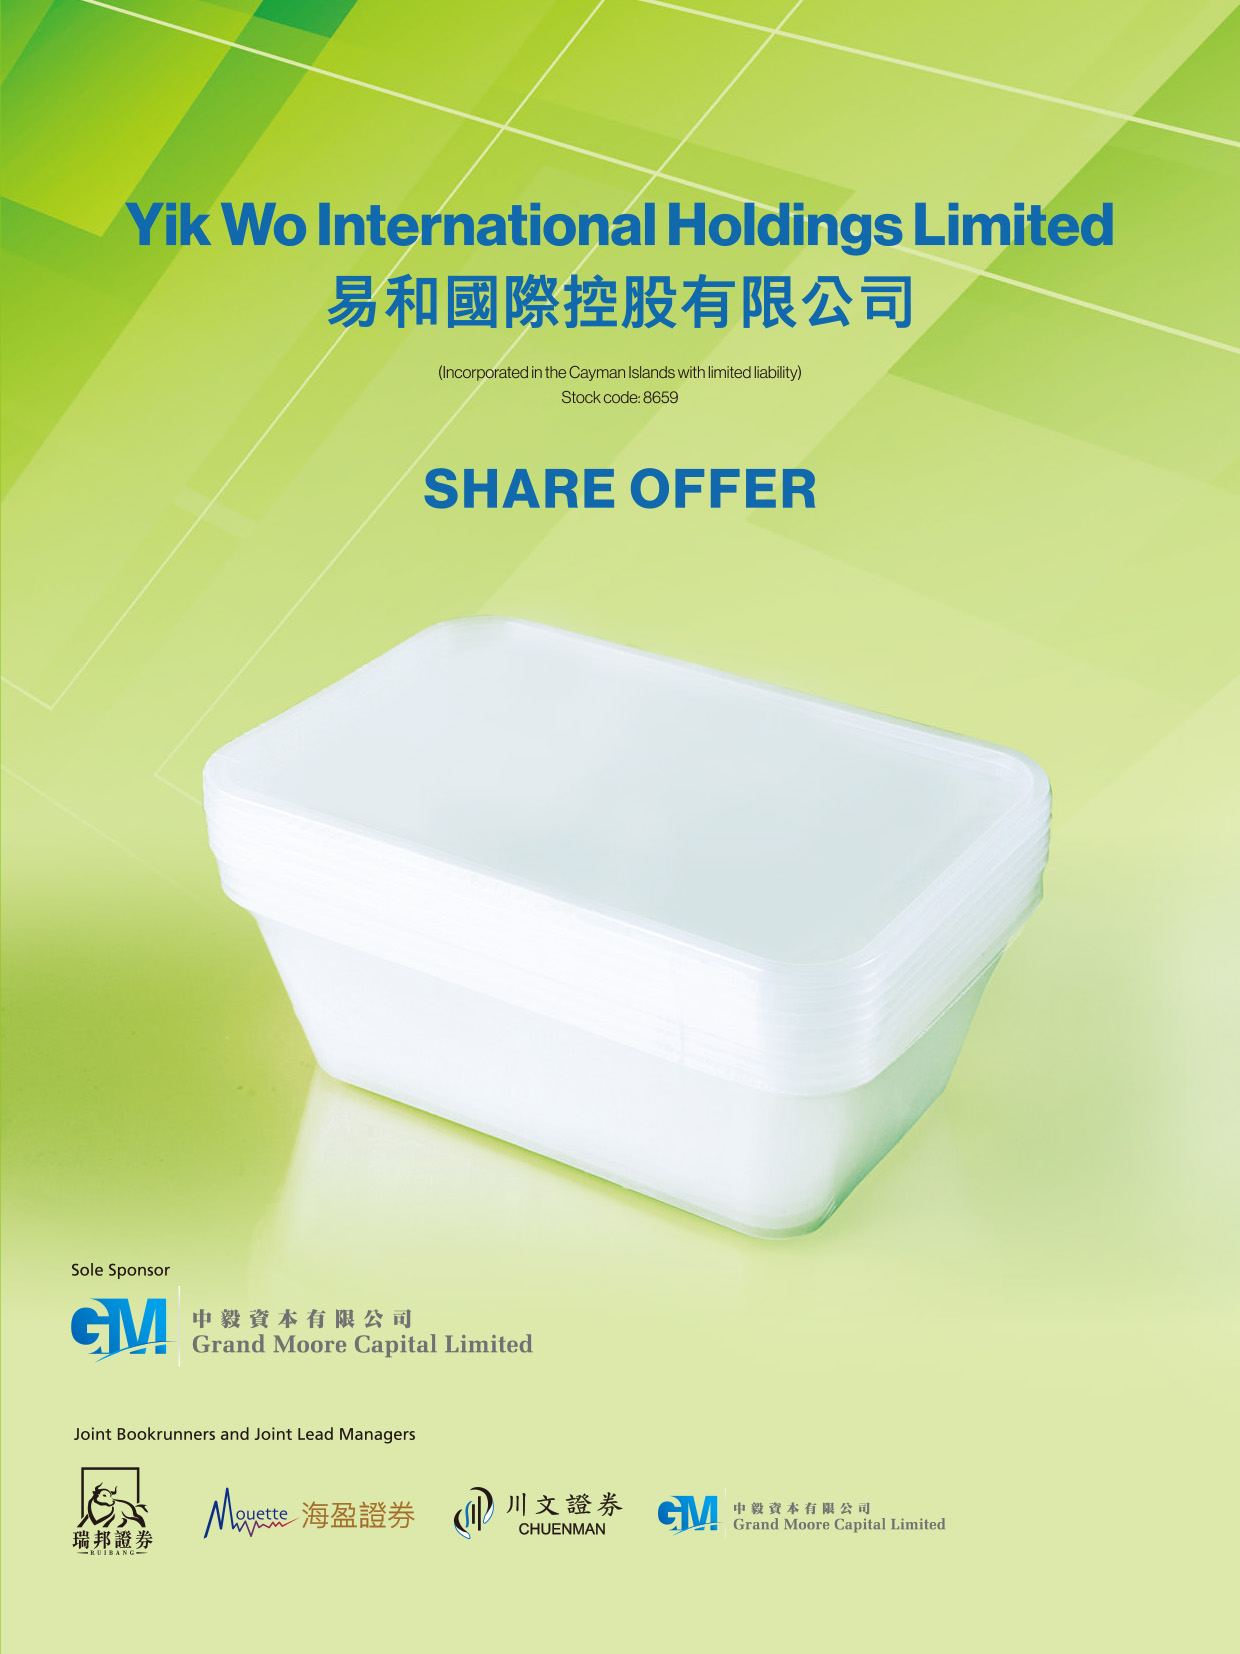 Yik Wo International Holdings Limited